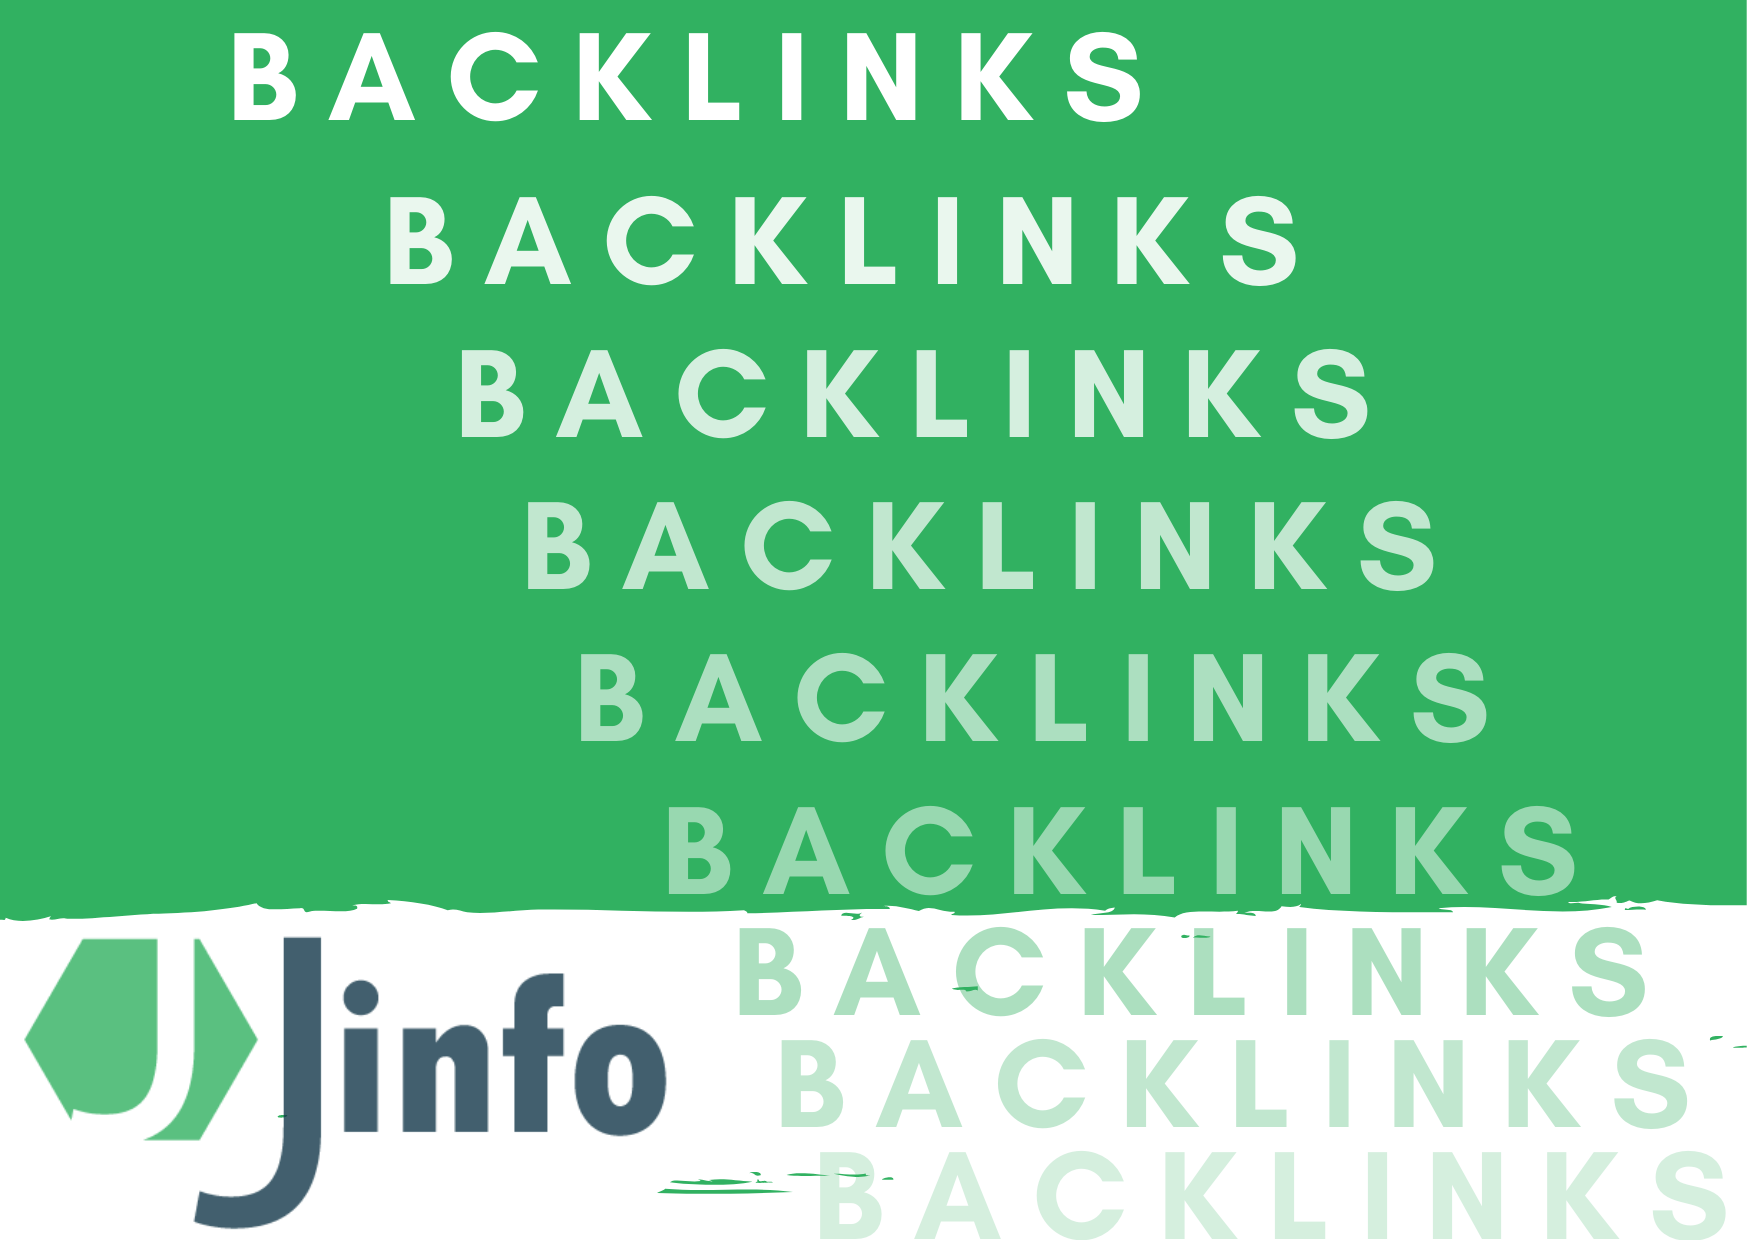 Jinfo backlinkins